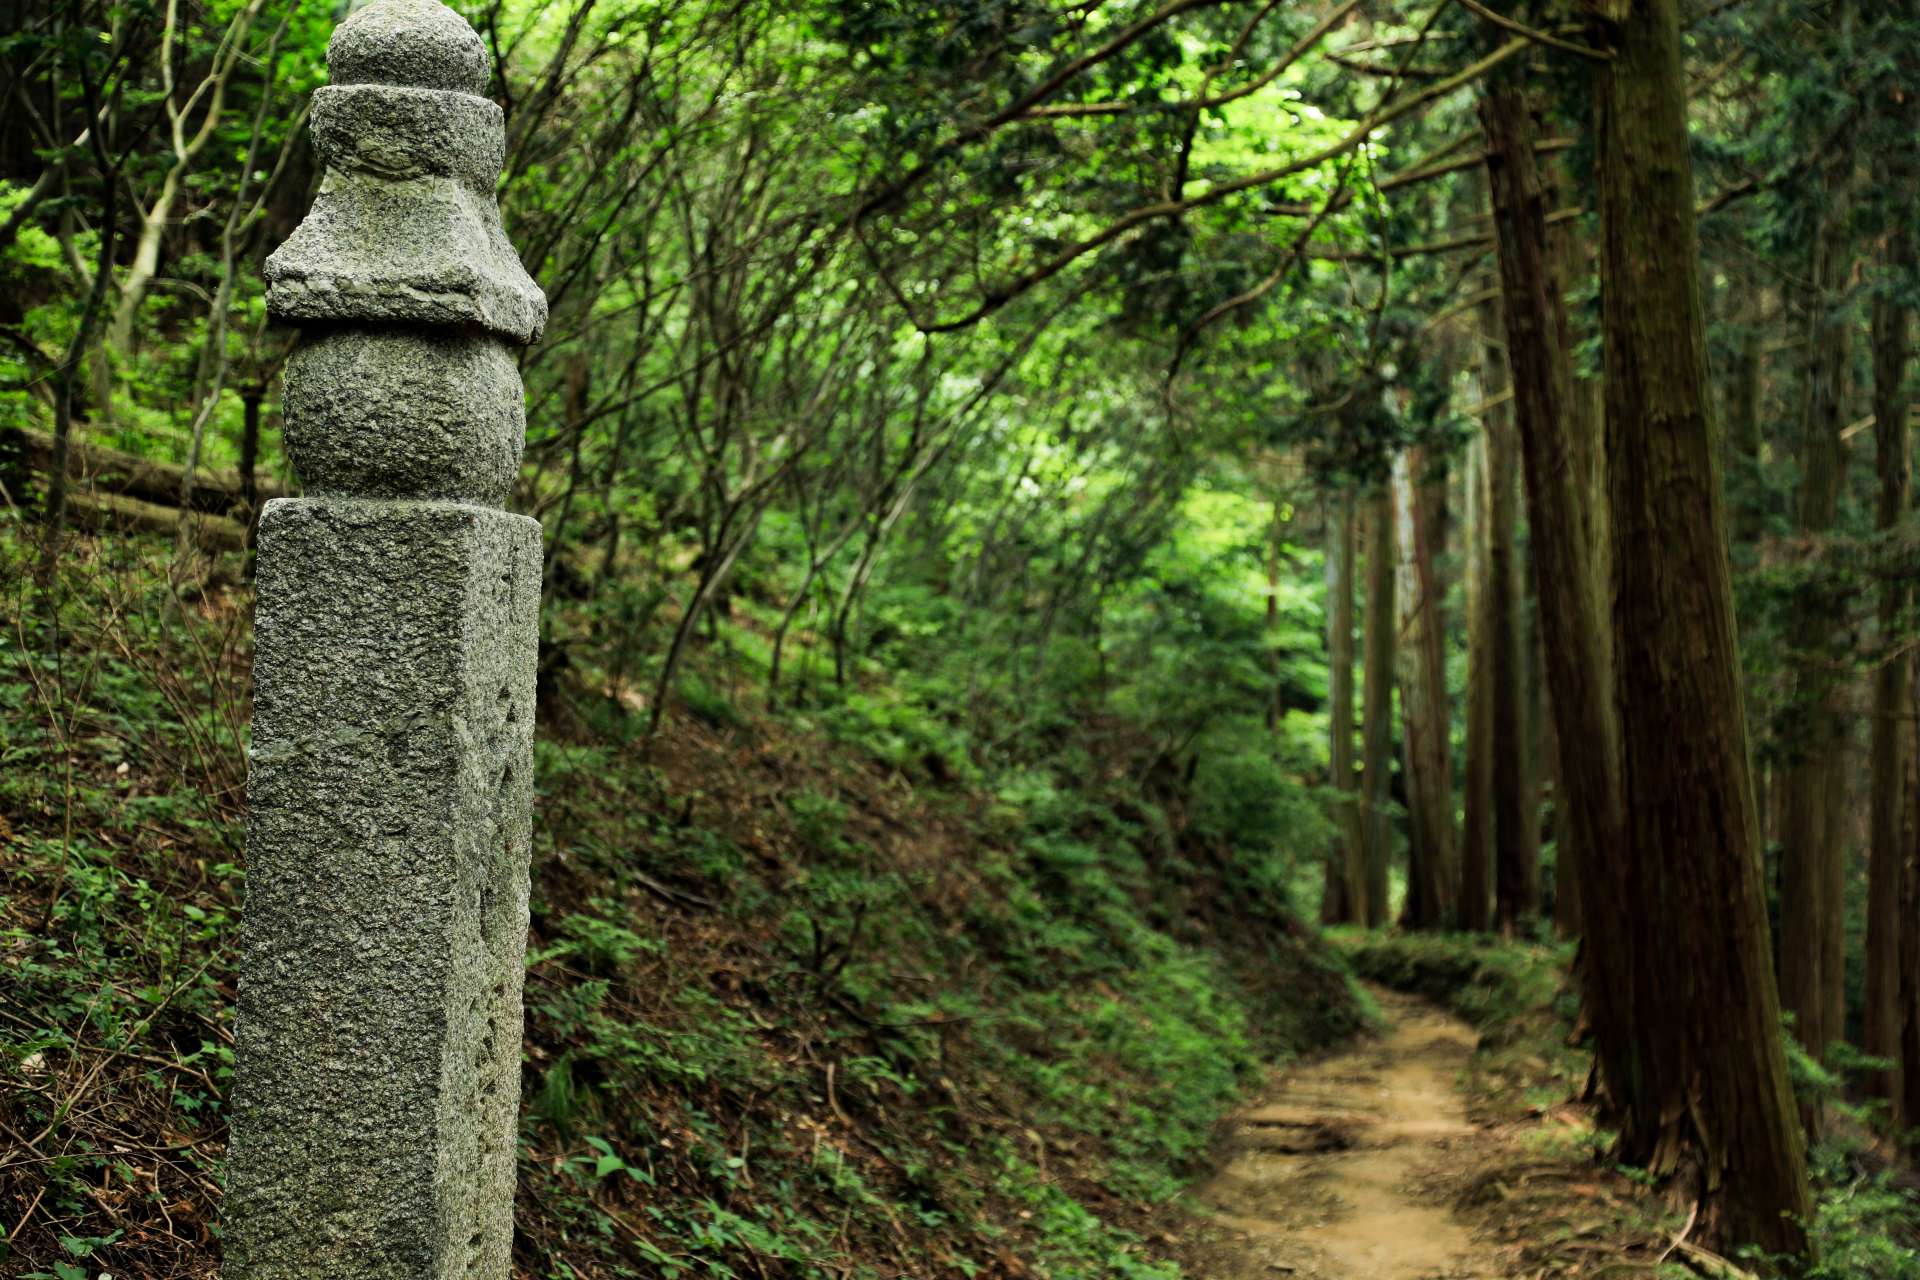 Les Choishi sont des piliers en pierre qui imitent la forme d'un gorinto, ou pagode à cinq niveaux. Ils étaient à l'origine en bois mais on les retrouve aujourd'hui dans cette construction en pierre popularisée à l'époque de Kamakura (1185-1333).